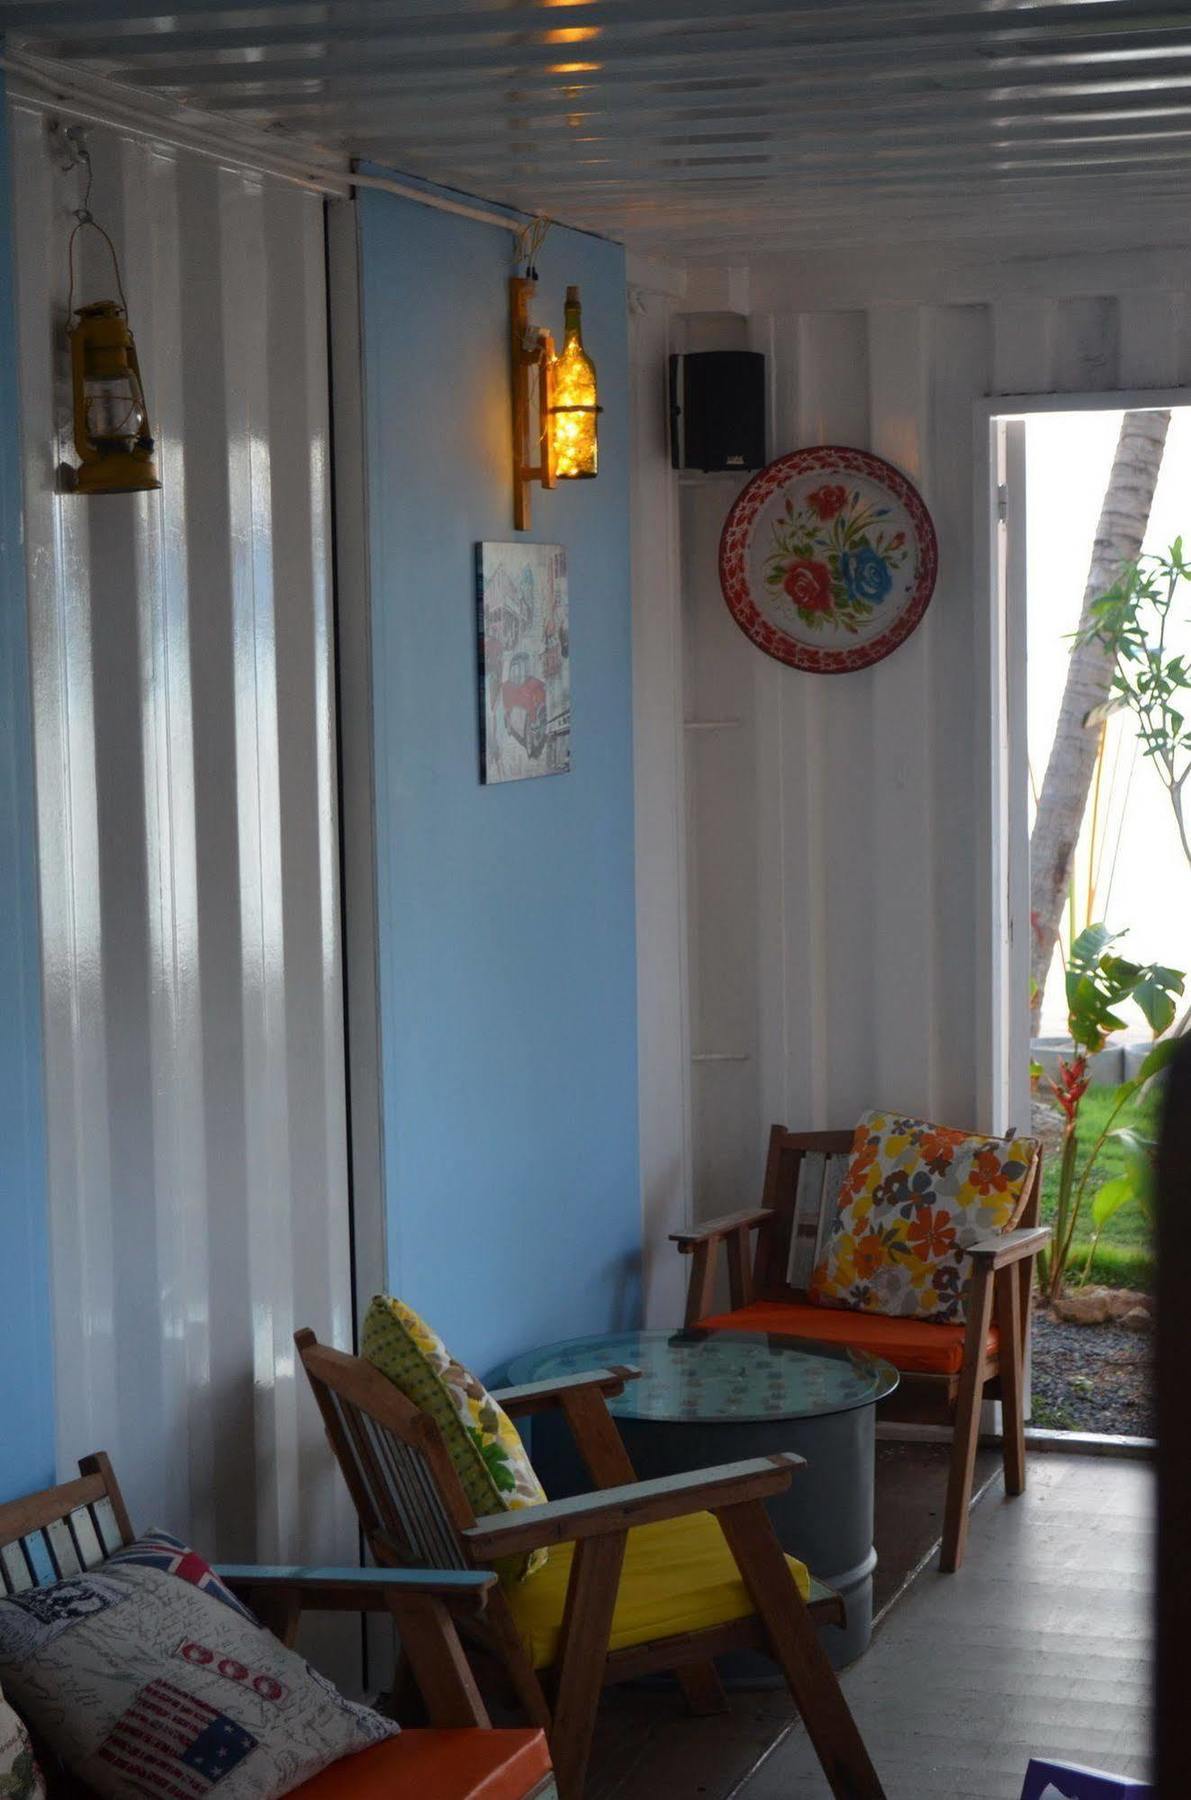 Think & Retro Cafe Lipa Noi Samui Hostel Exterior photo